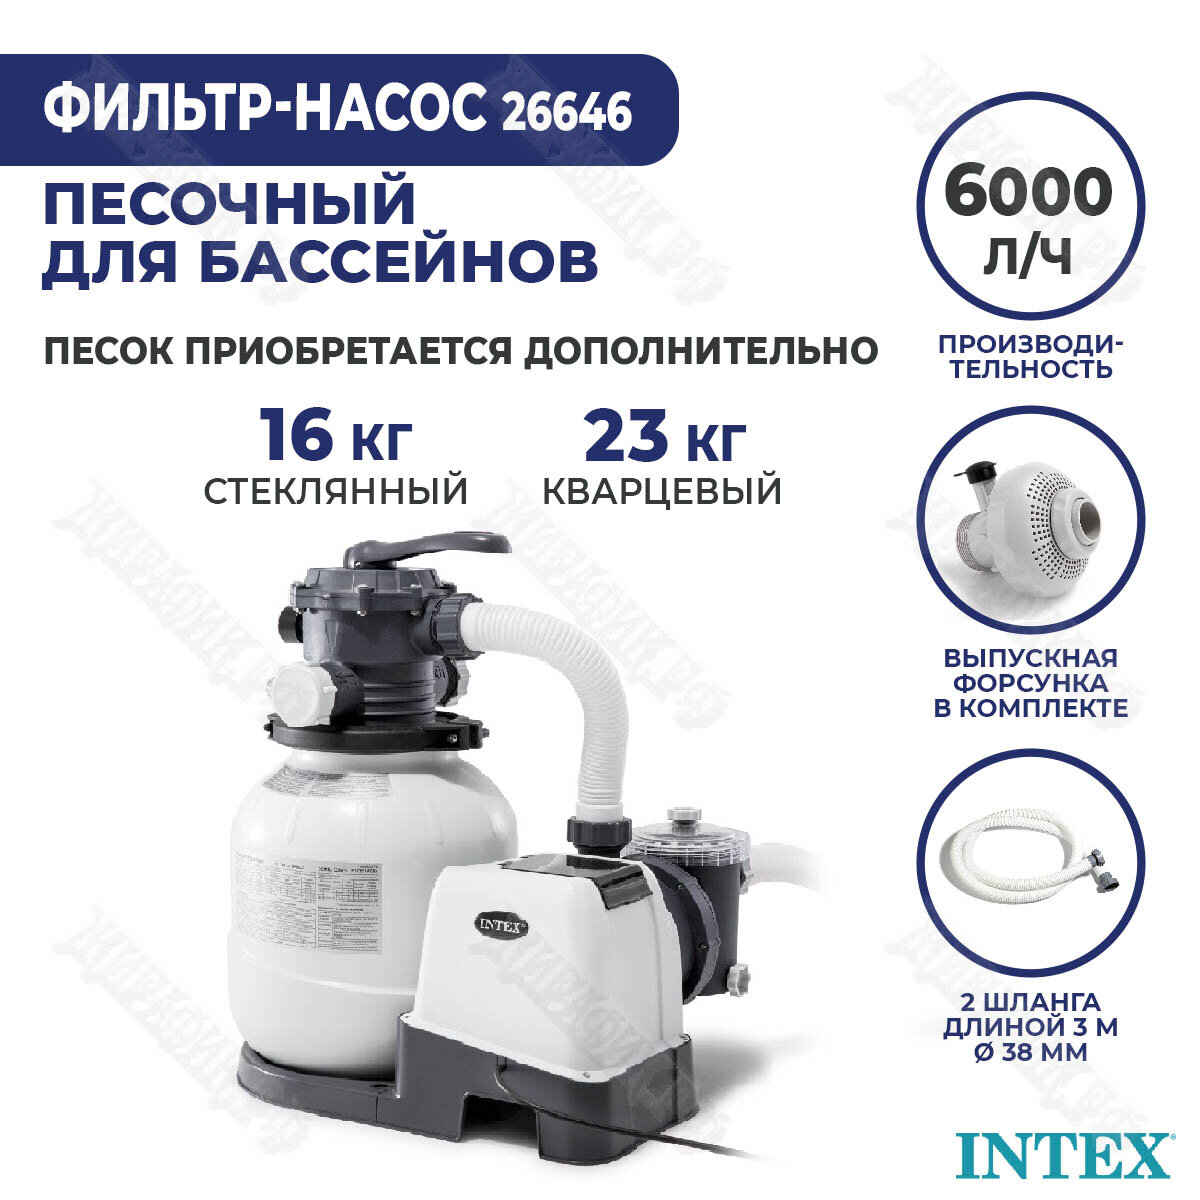 Песочный фильтр насос для бассейна Intex 6000 л/ч 26646